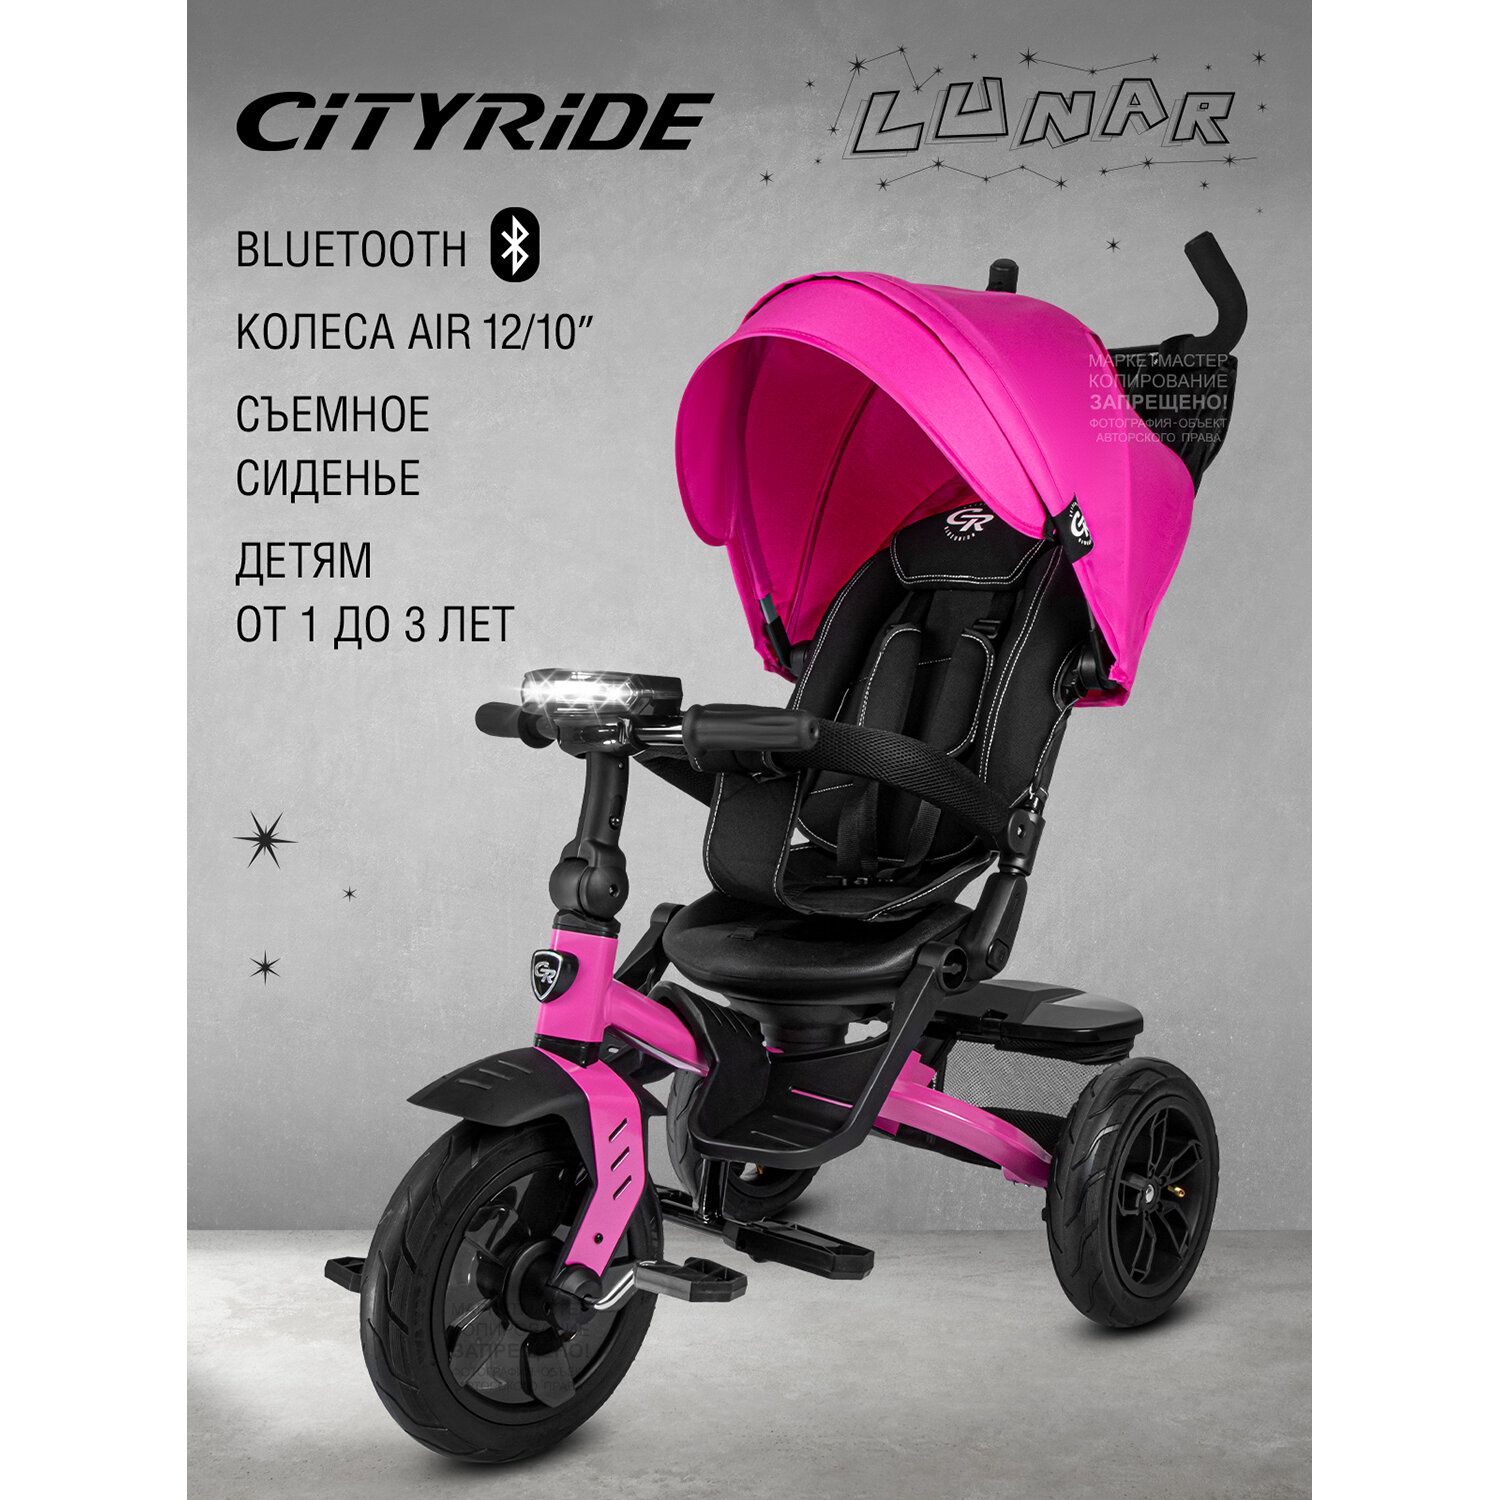 Велосипед детский 3-колесный ТМ CITYRIDE LUNAR, складная крыша, надувные колеса 12"/10", ножной тормоз, поворот сиденья 360◦, свет/звук, CR-B3-10PK